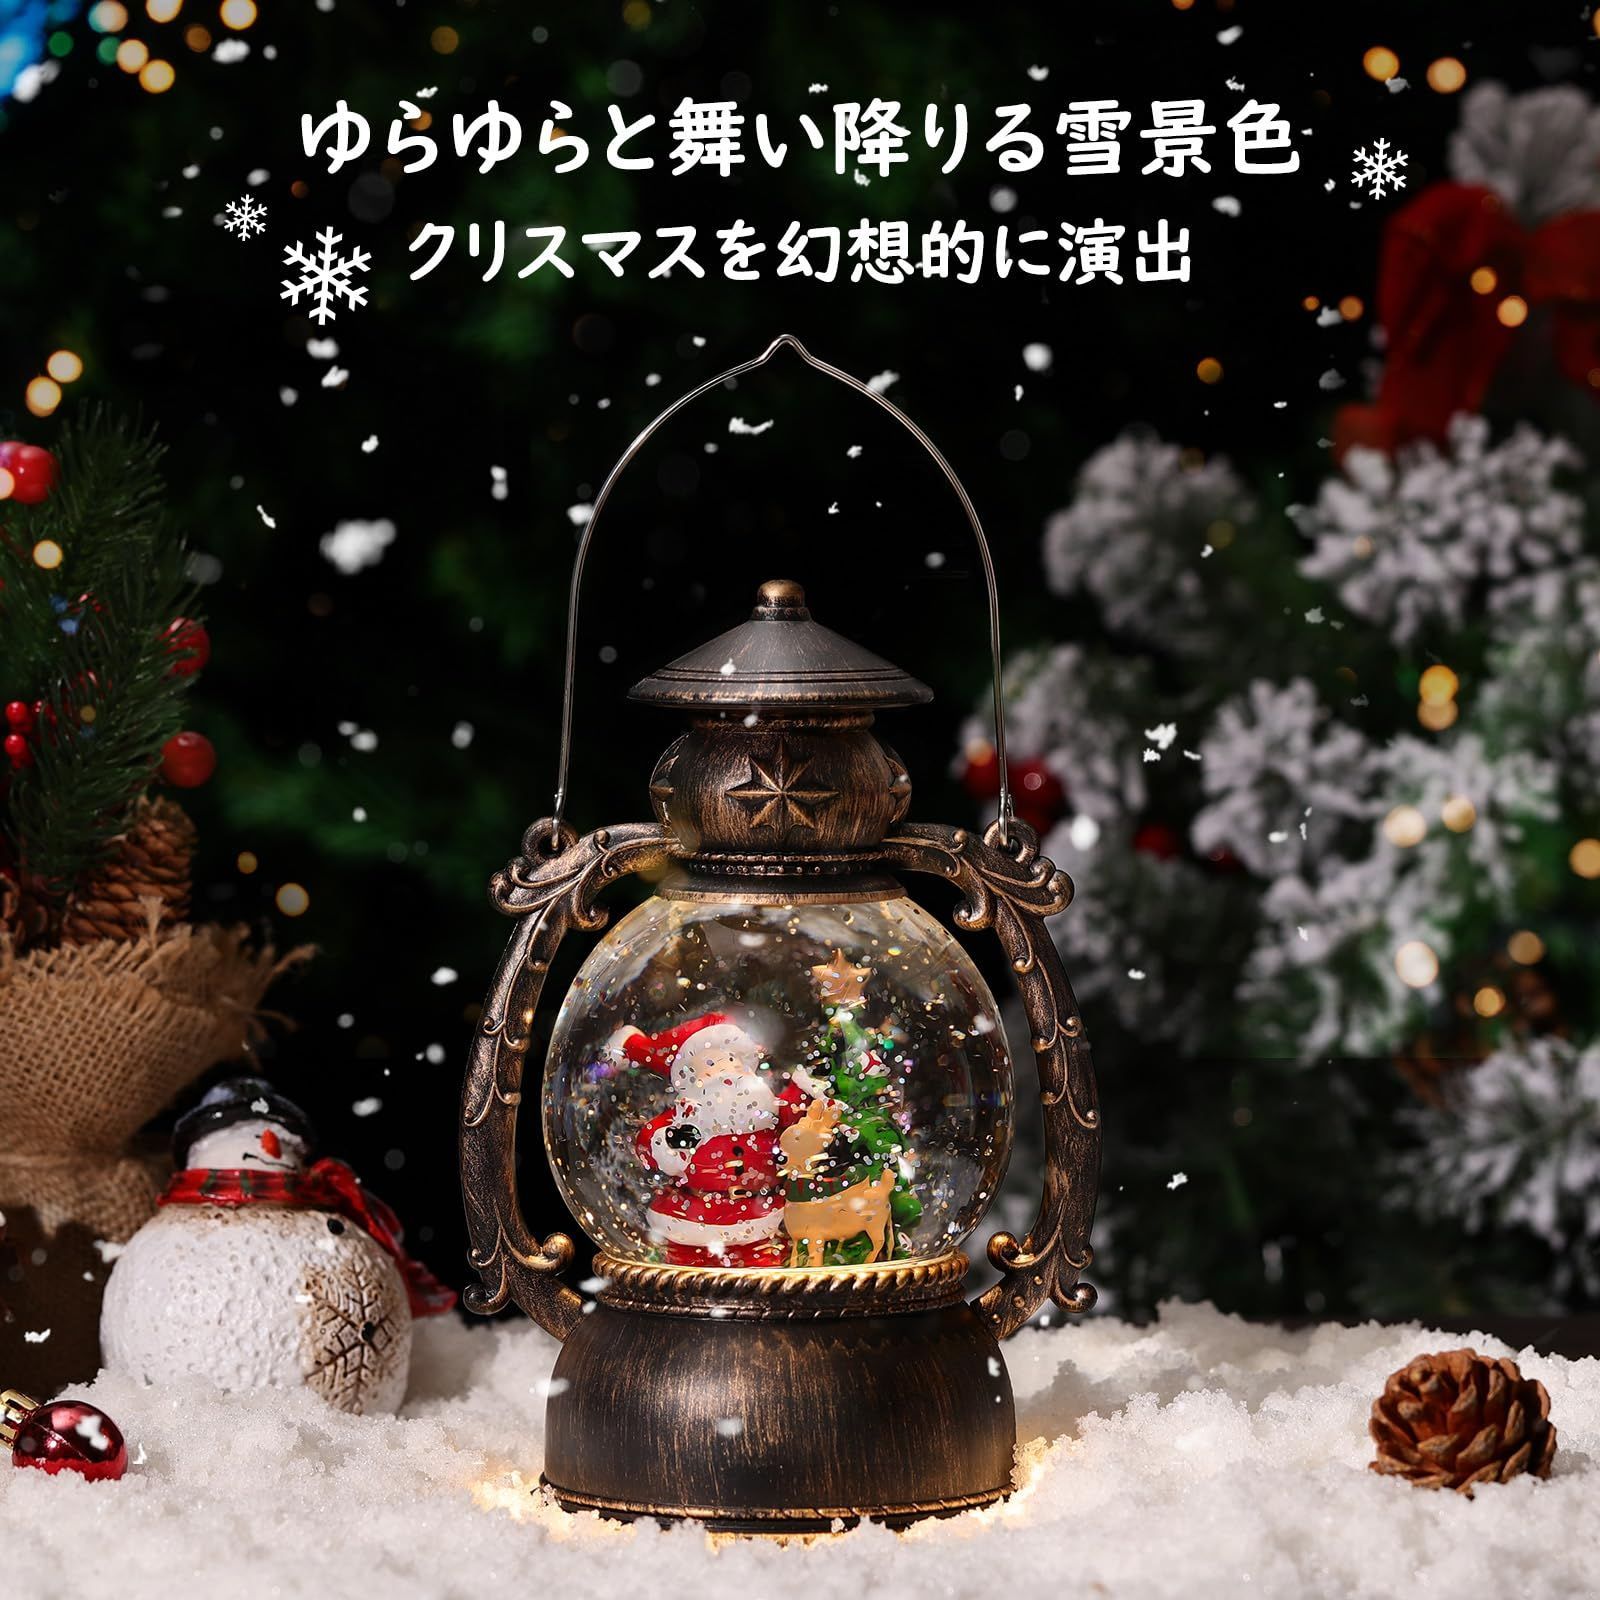 【流行】ちえぶた様Animated Village Scene クリスマスオーナメント クリスマス